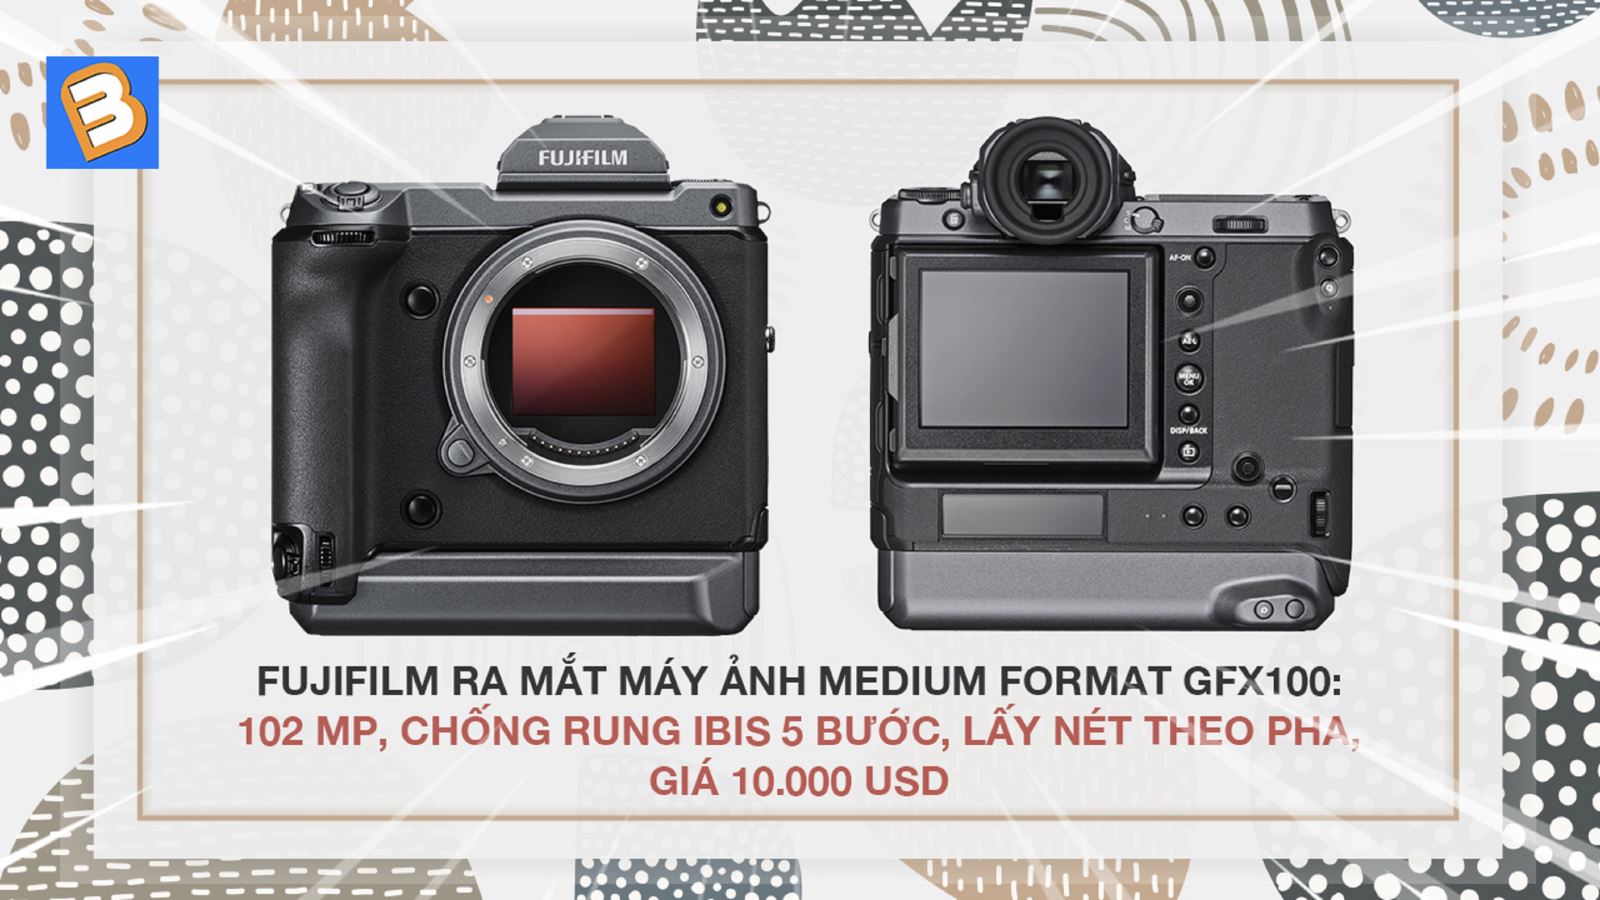 Fujifilm ra mắt máy ảnh medium format GFX100: 102 MP, chống rung IBIS 5 bước, lấy nét theo pha, giá 10.000 USD